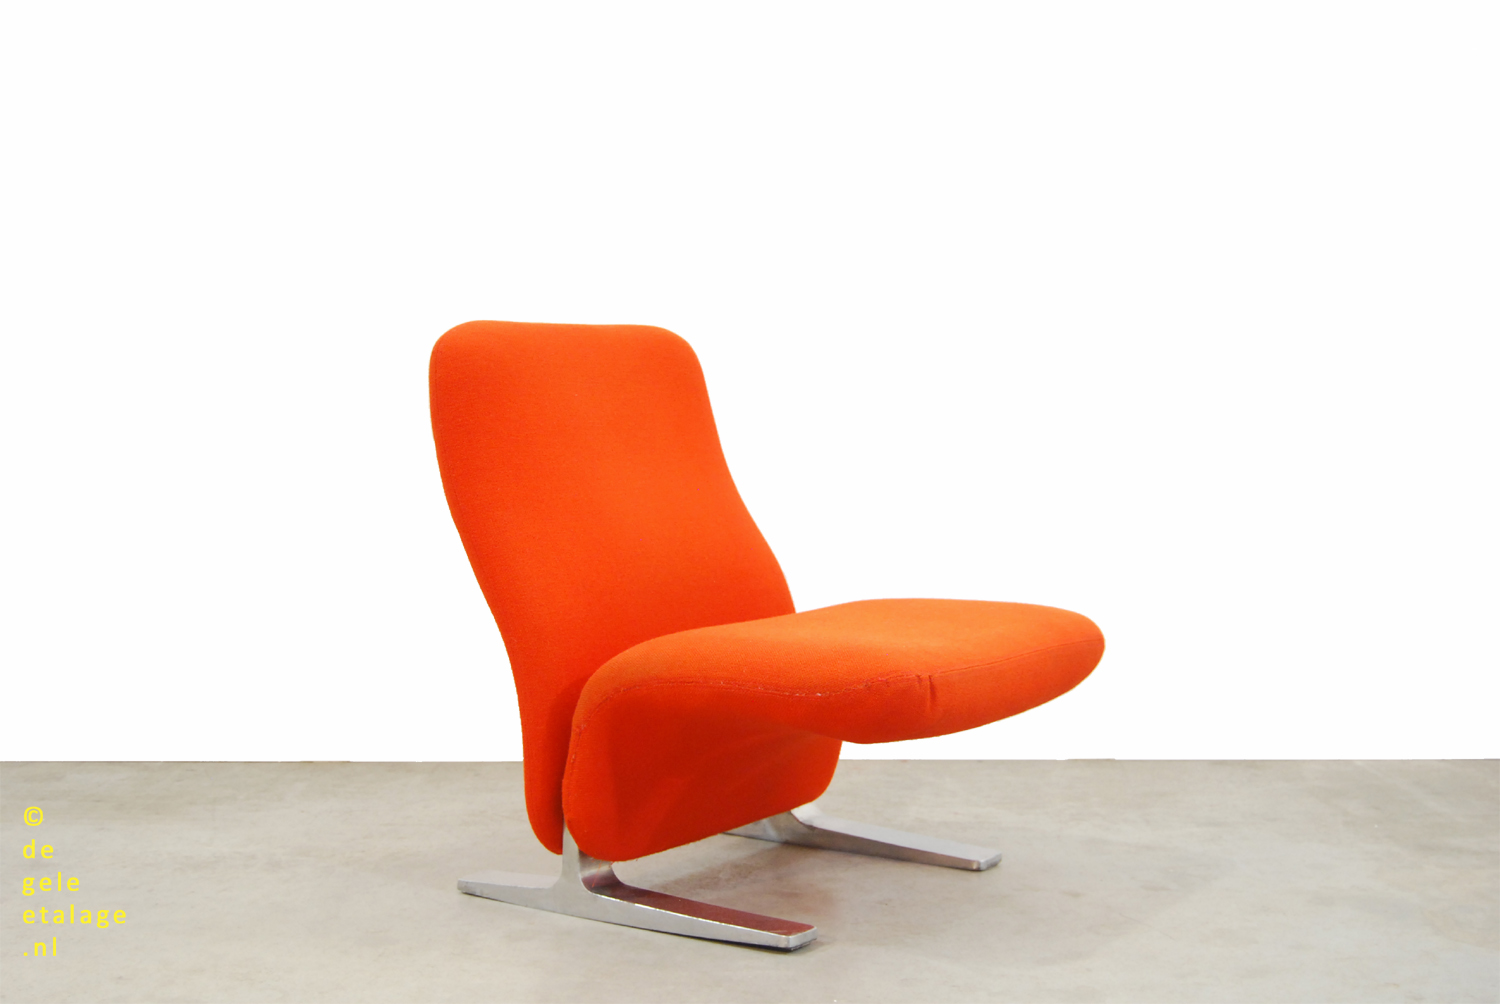 Avondeten Worstelen Uitstekend Vintage design fauteuil / Concorde / Pierre Paulin / Artifort / 1960s | DE  GELE ETALAGE